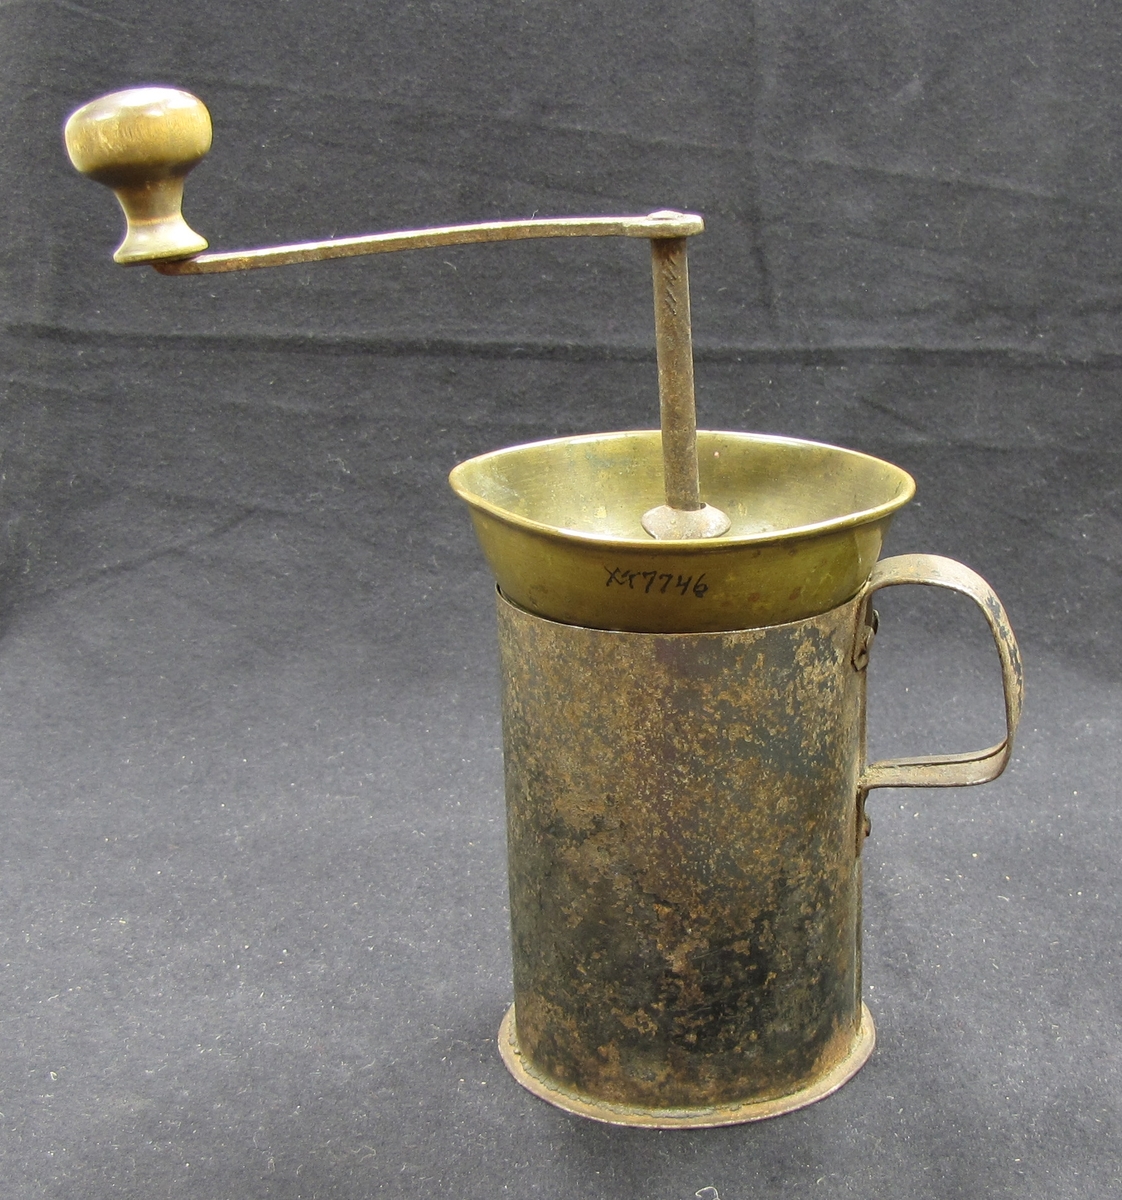 Kaffekvarn med vev med trähandtag. Tratt av mässing. Behållaren består av en mugg i plåt med handtag. Kaffekvarnen användes för att mala kaffebönor till pulver.